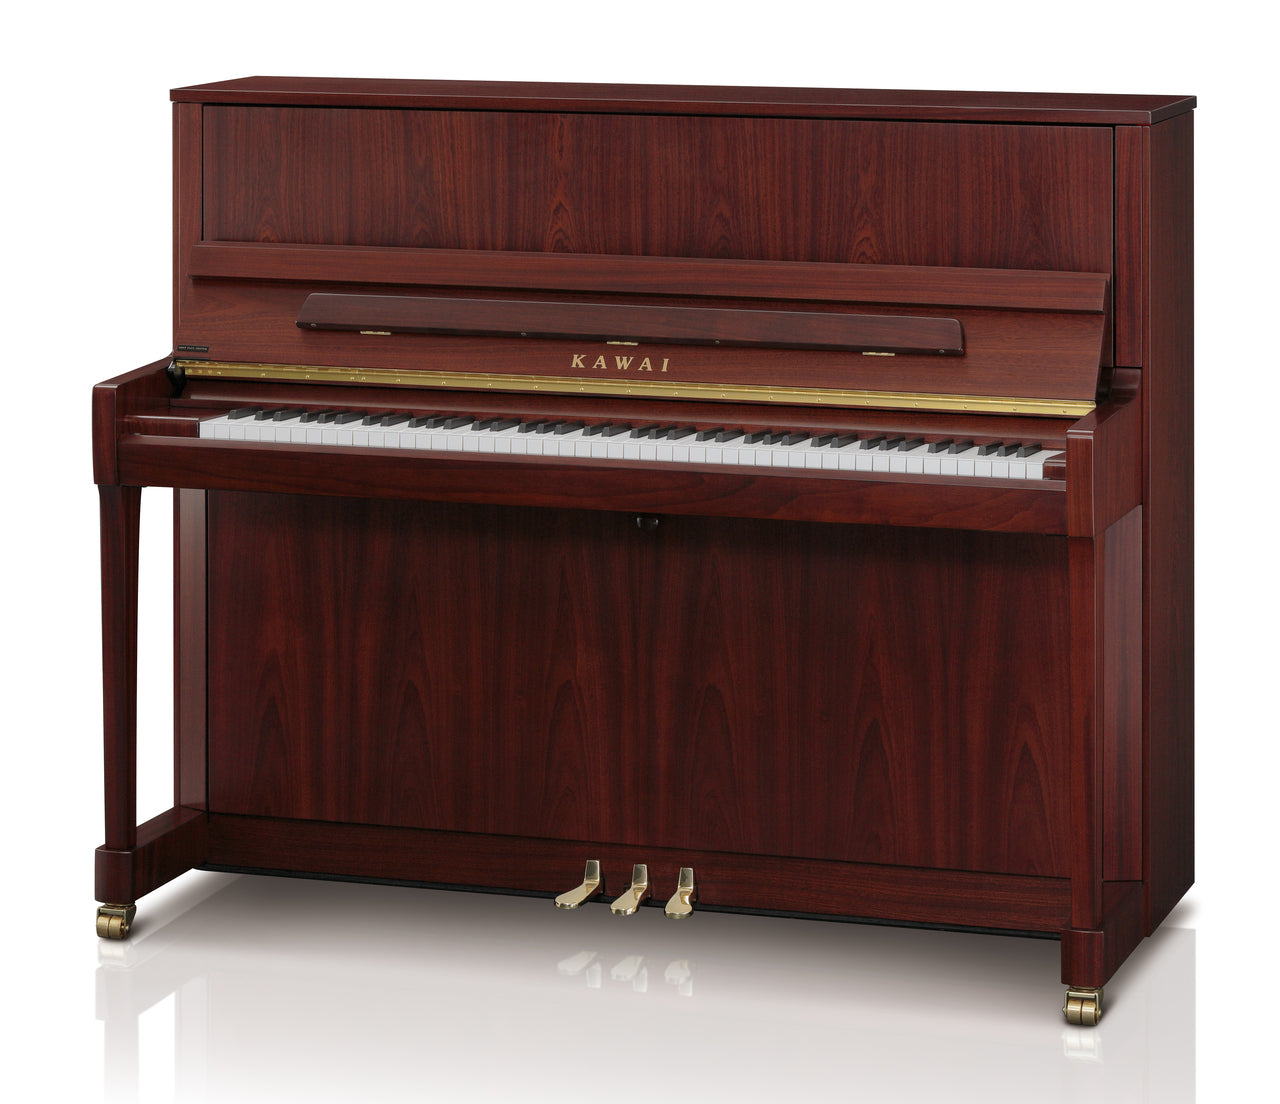 Kawai 48" K-300 Upright Piano | Satin Mahogany | New